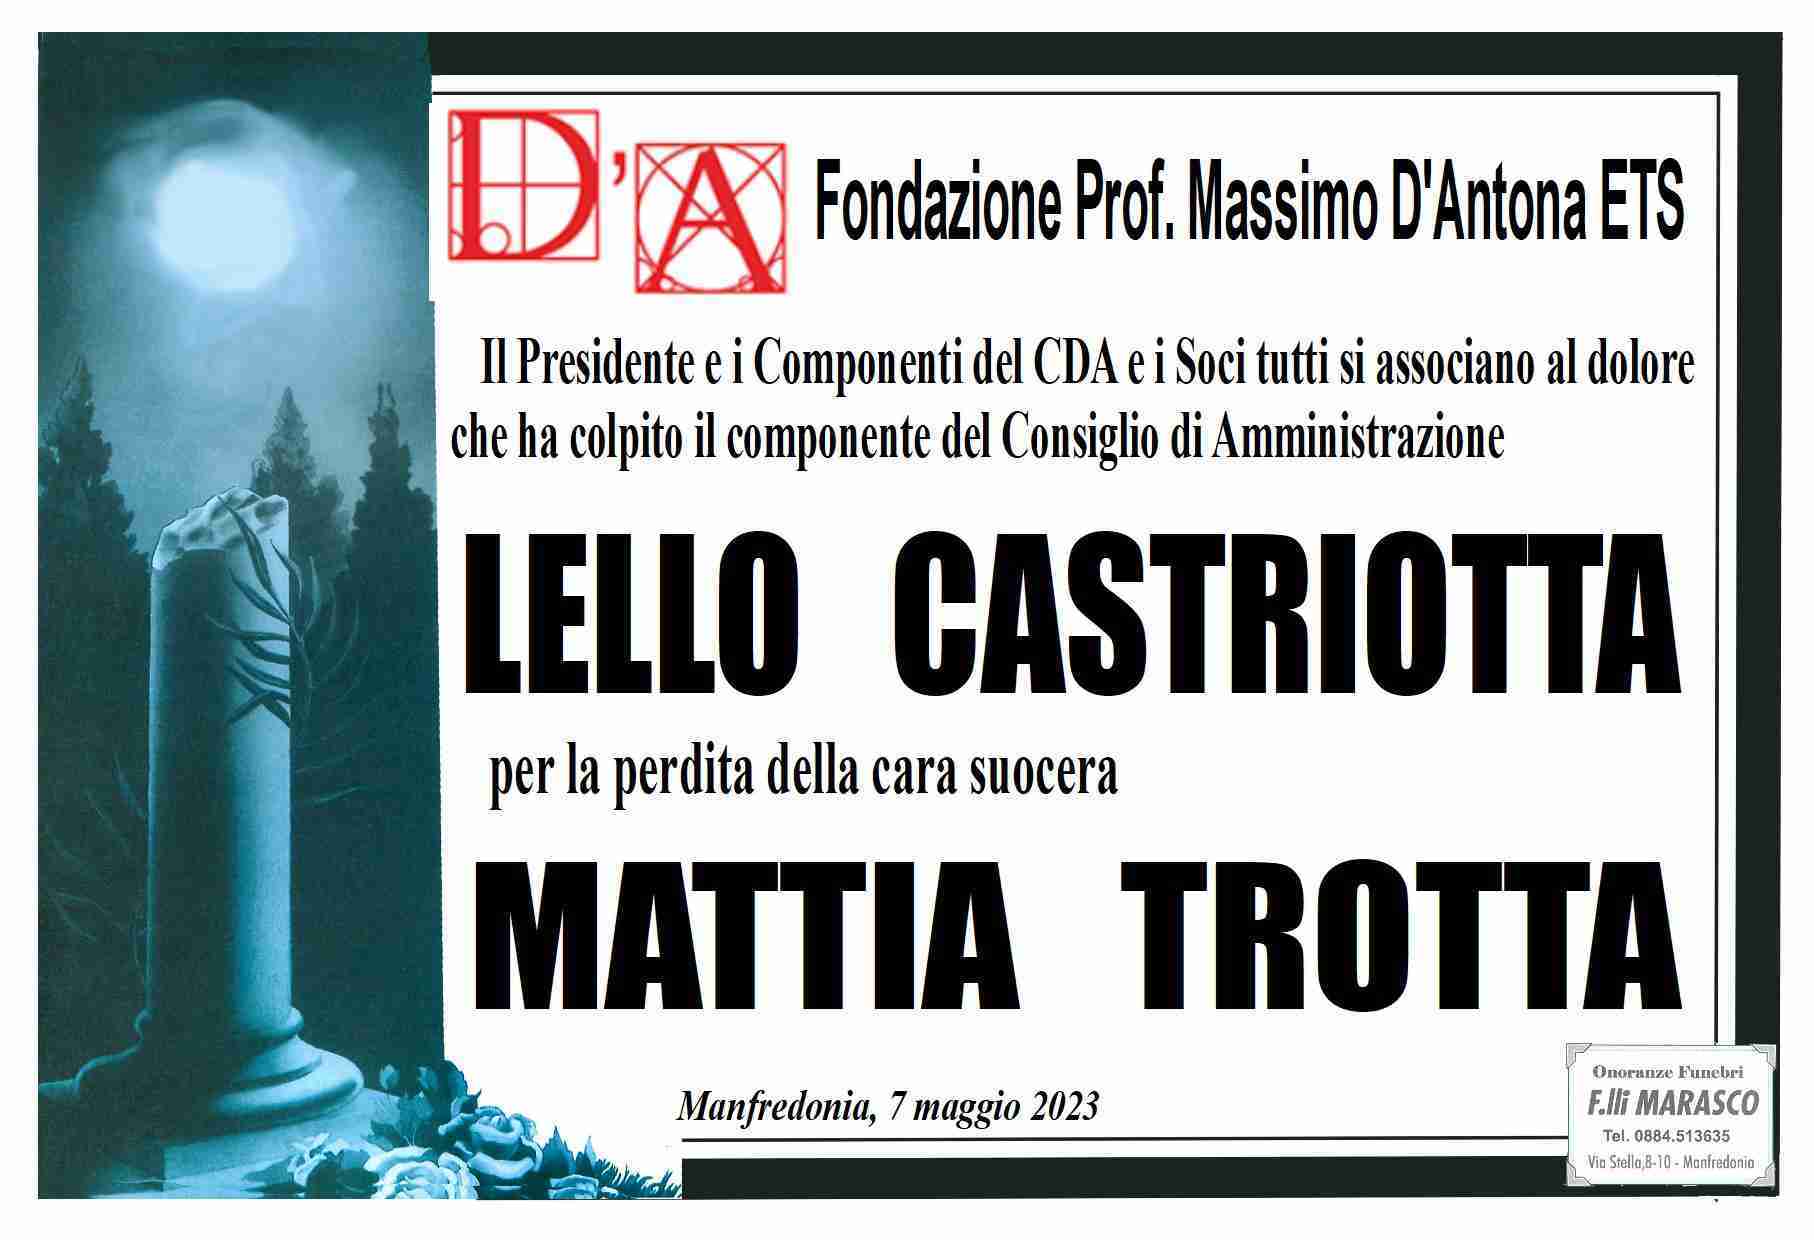 Mattia Trotta